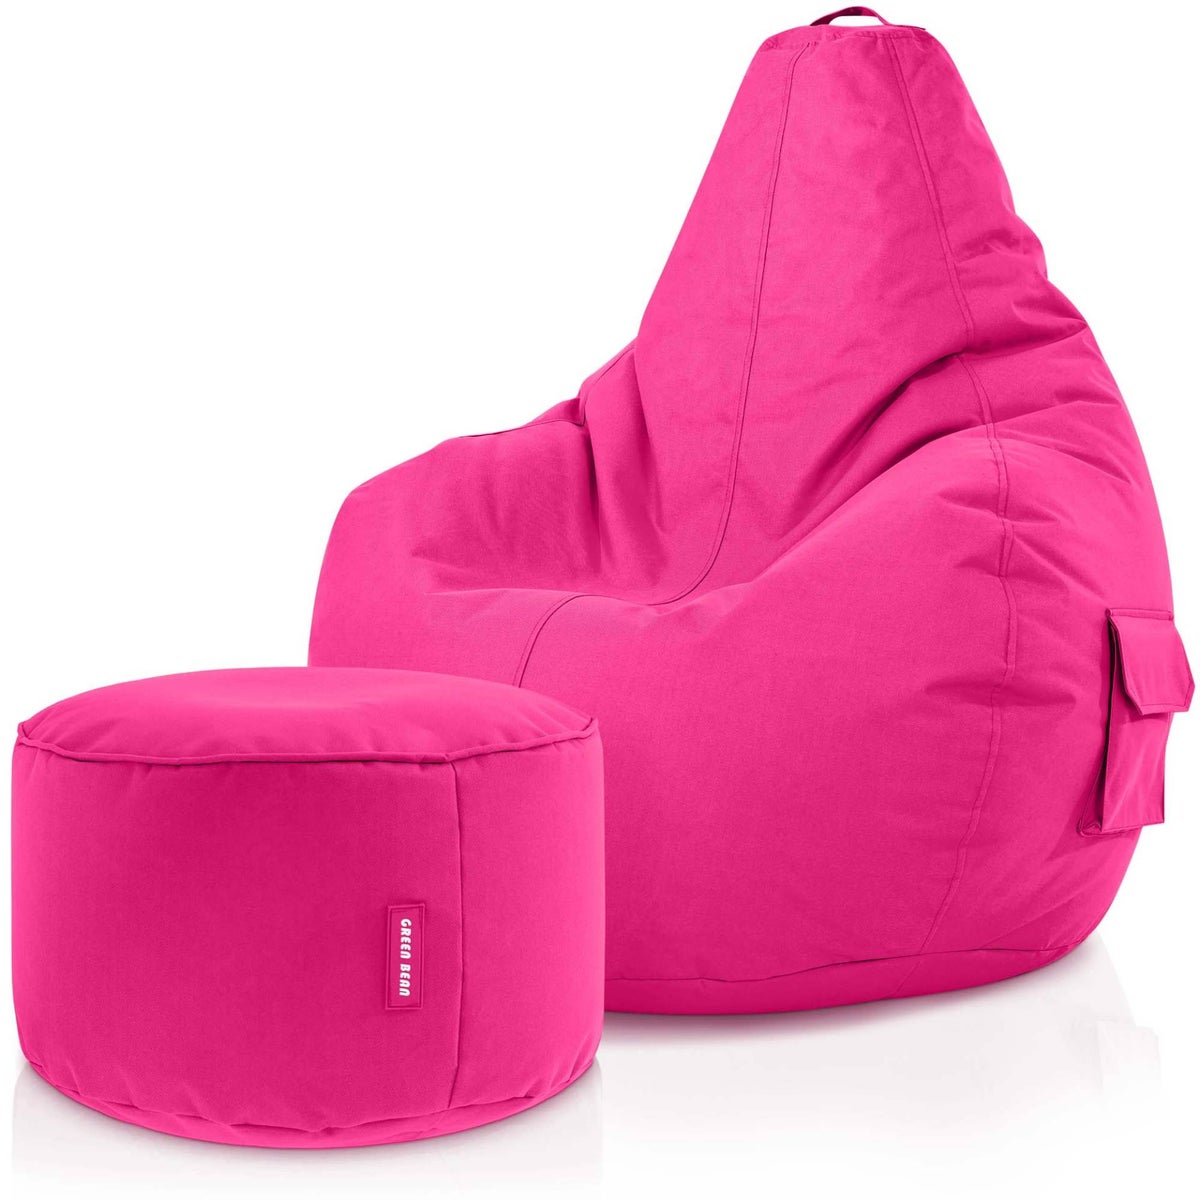 Green Bean© 2er Set Sitzsack + Hocker - fertig befüllt - robust waschbar schmutzabweisend - Kinder &amp; Erwachsene Bean Bag Bodenkissen Lounge Sitzhocker Relax-Sessel Gamer Gamingstuhl Pouf - Pink